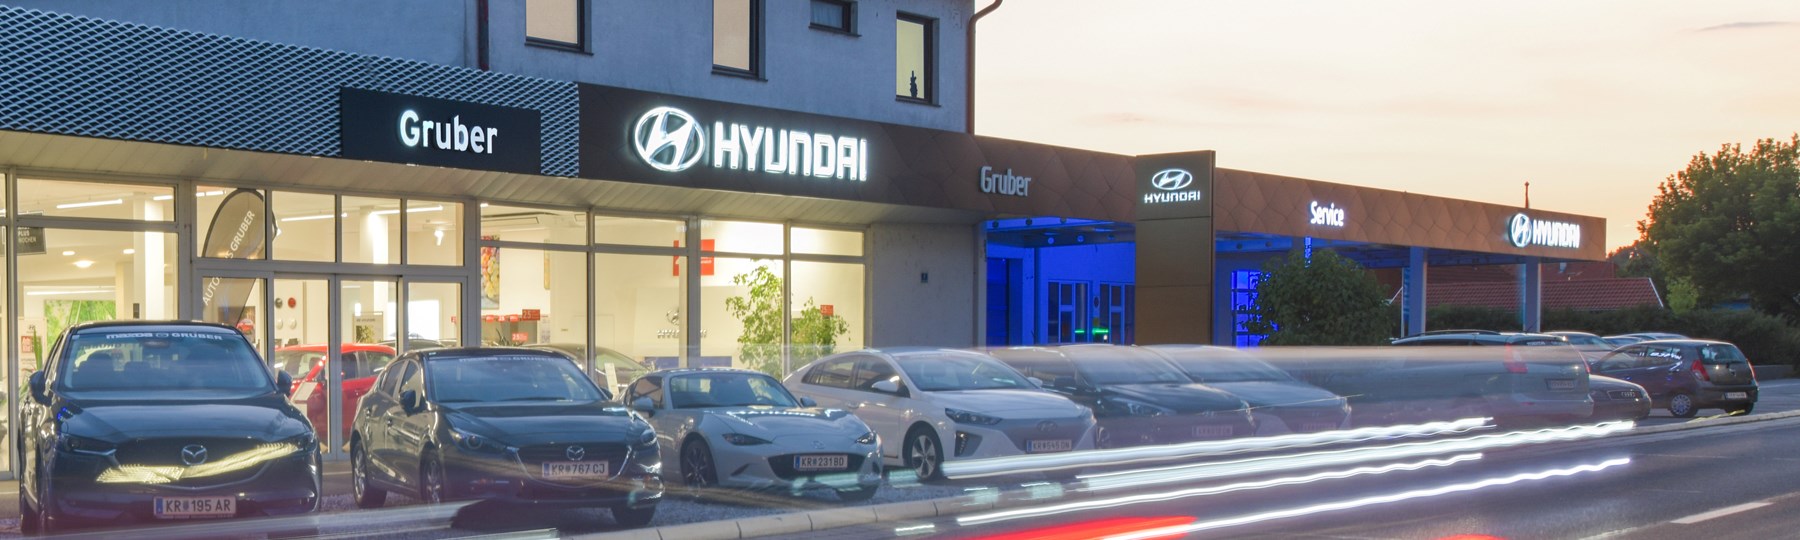 Autohaus Gruber Kammern Außen Hyundai